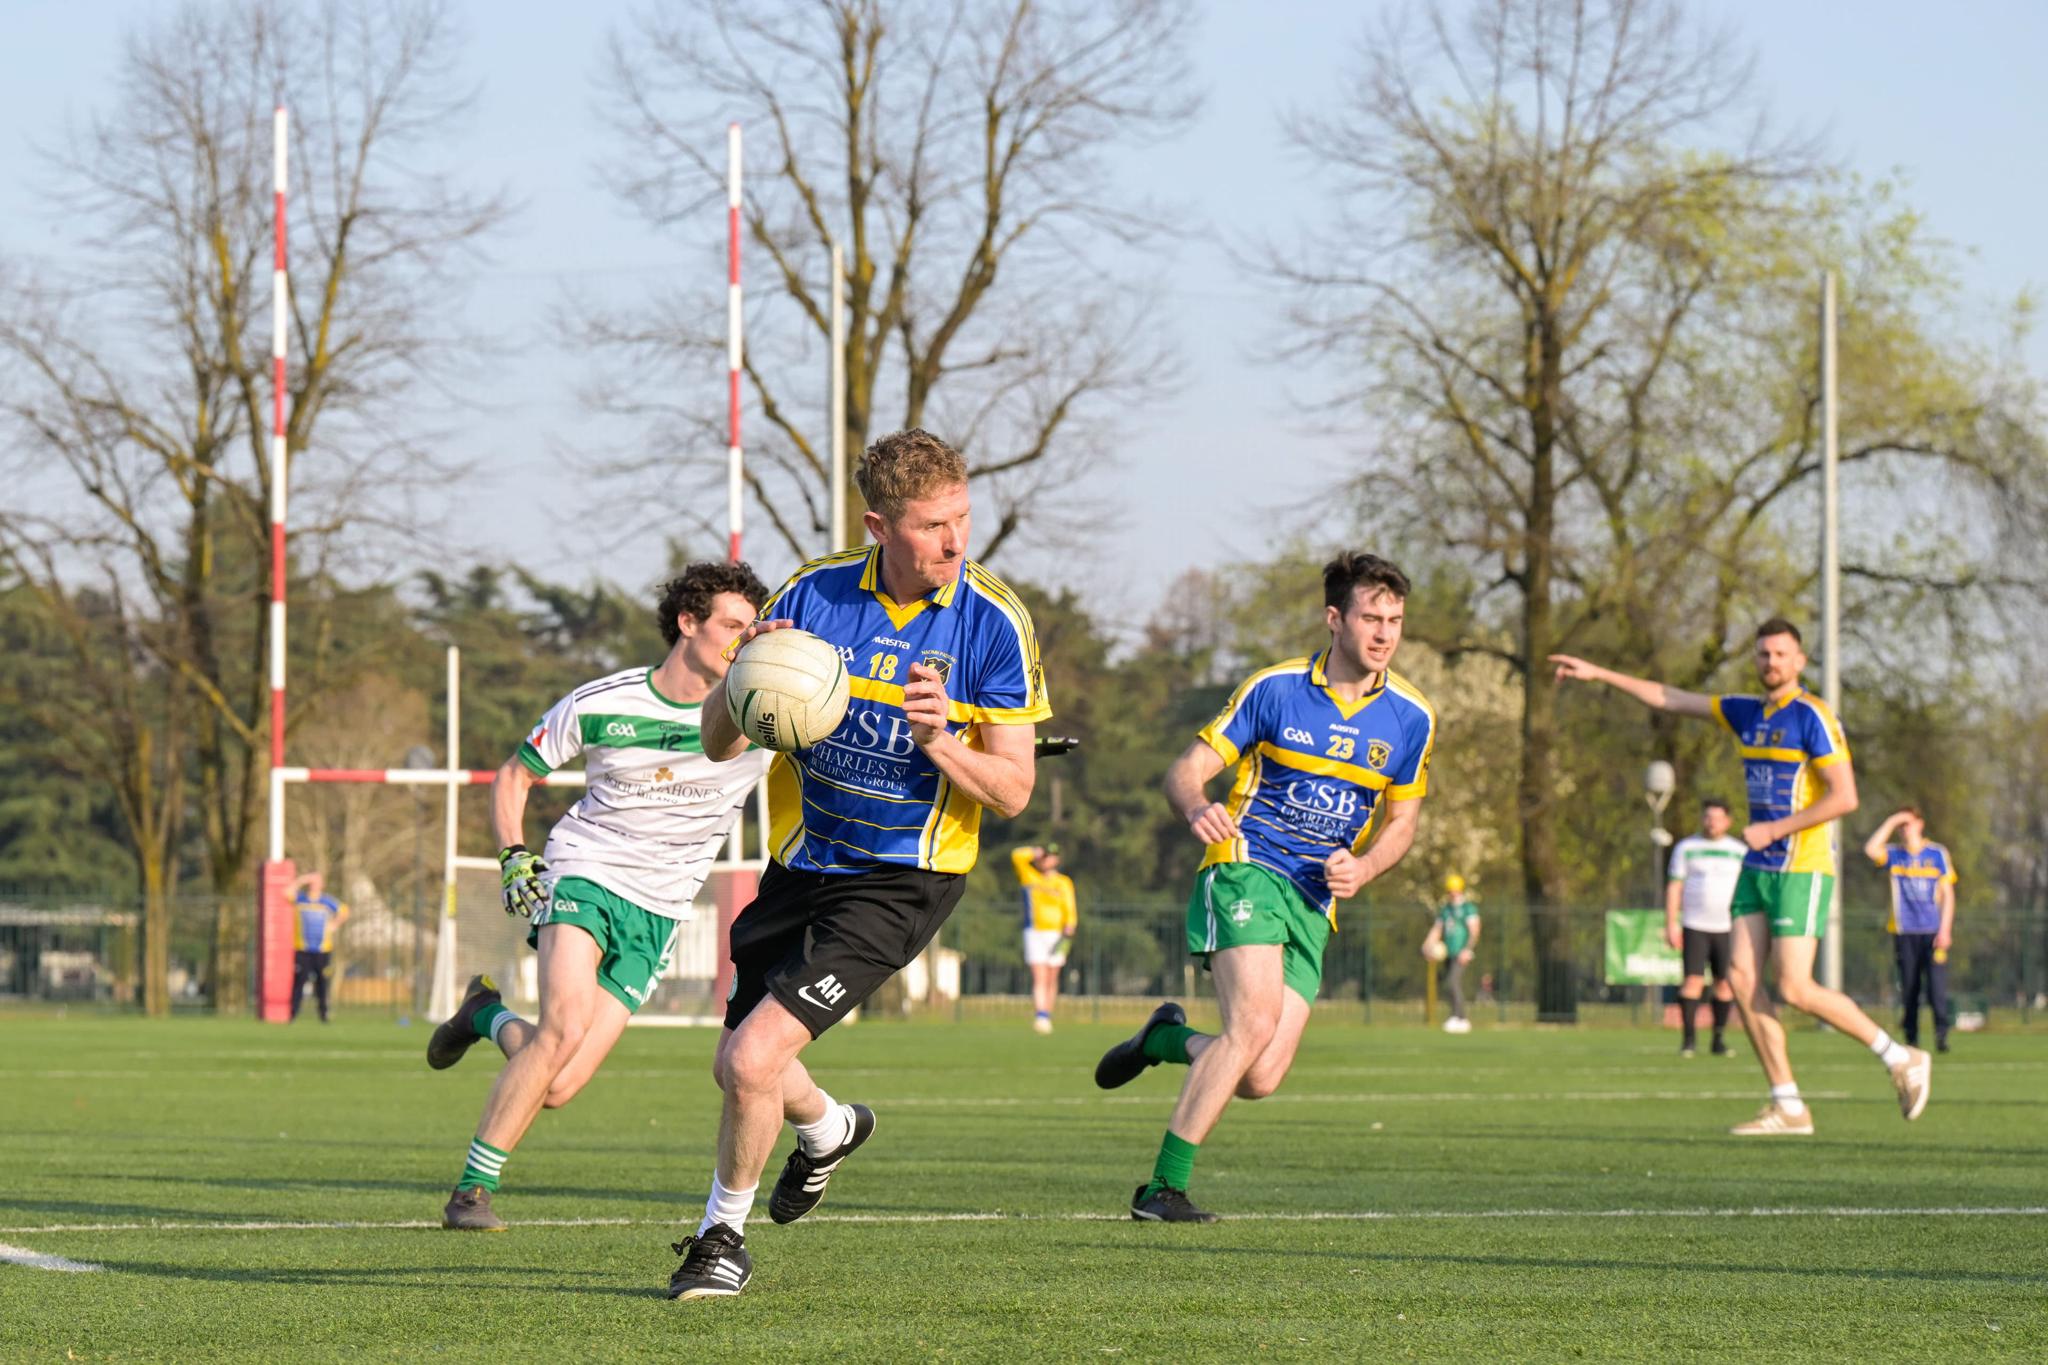 Ireland Week - Partita di Calcio Gaelico